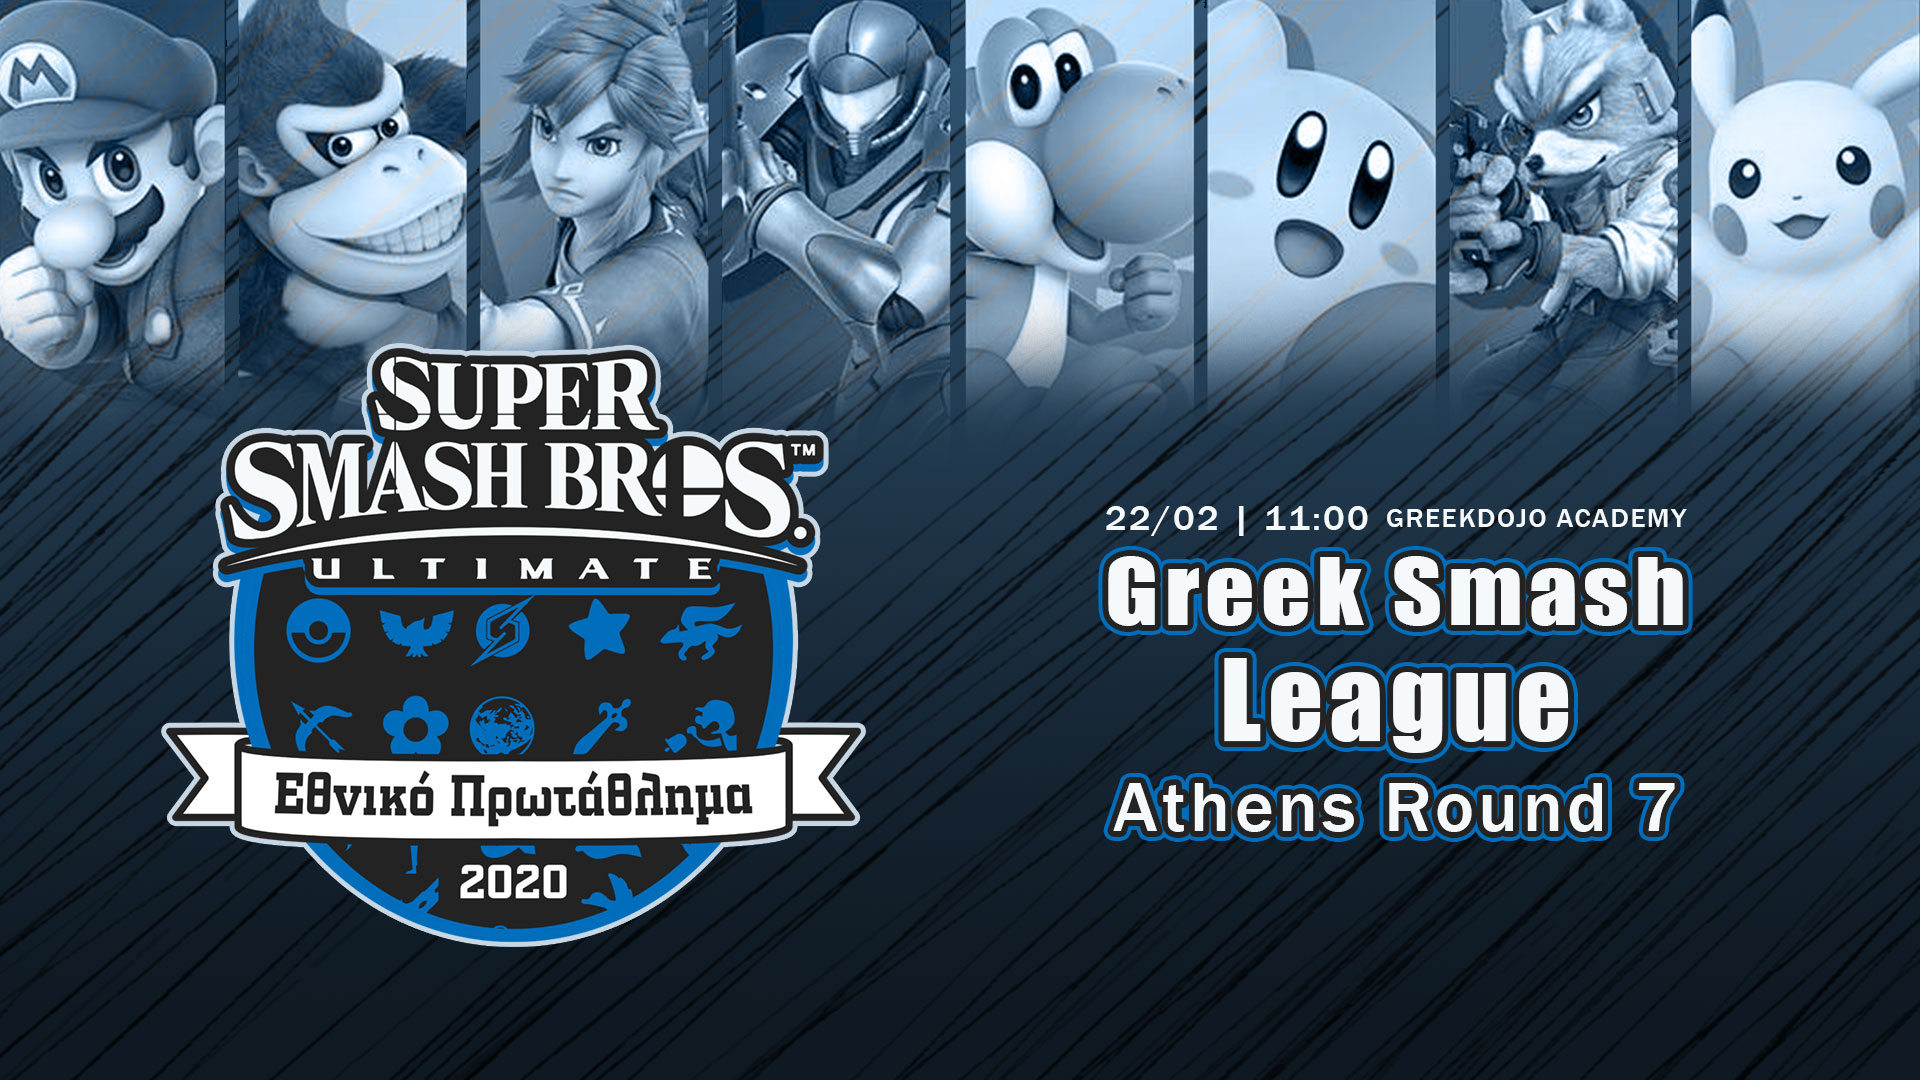 Greek Smash League 2020 Round 7 Athens